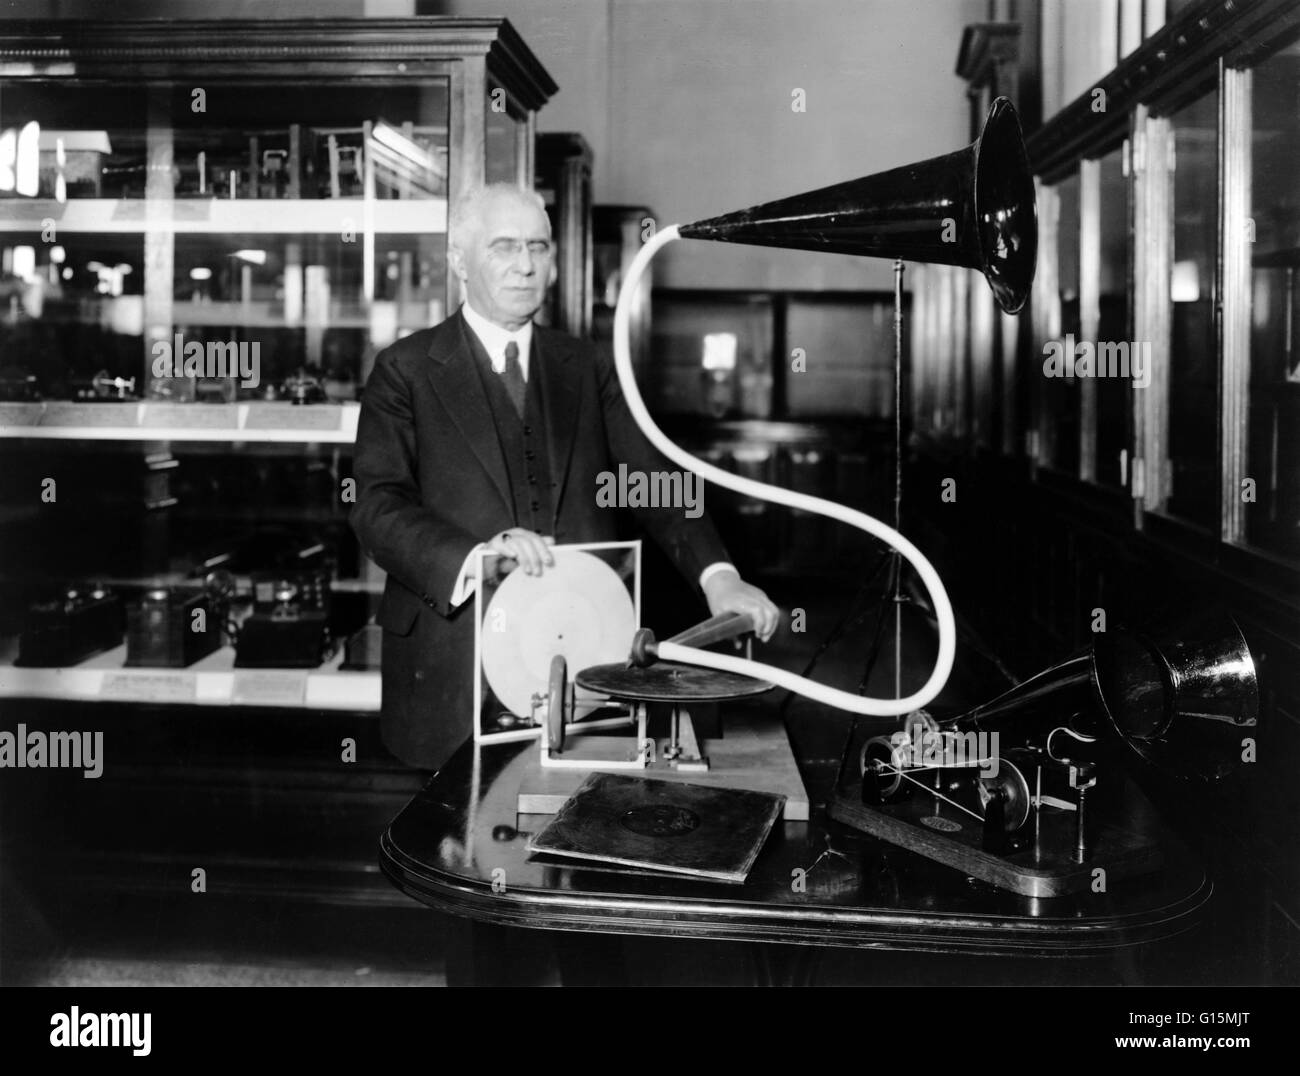 Berliner, con el modelo de la primera máquina tocadiscos que él inventó.  Emile Berliner (Mayo 20, 1851 - 3 de agosto de 1929) fue un inventor  estadounidense nacido en Alemania. Se interesó